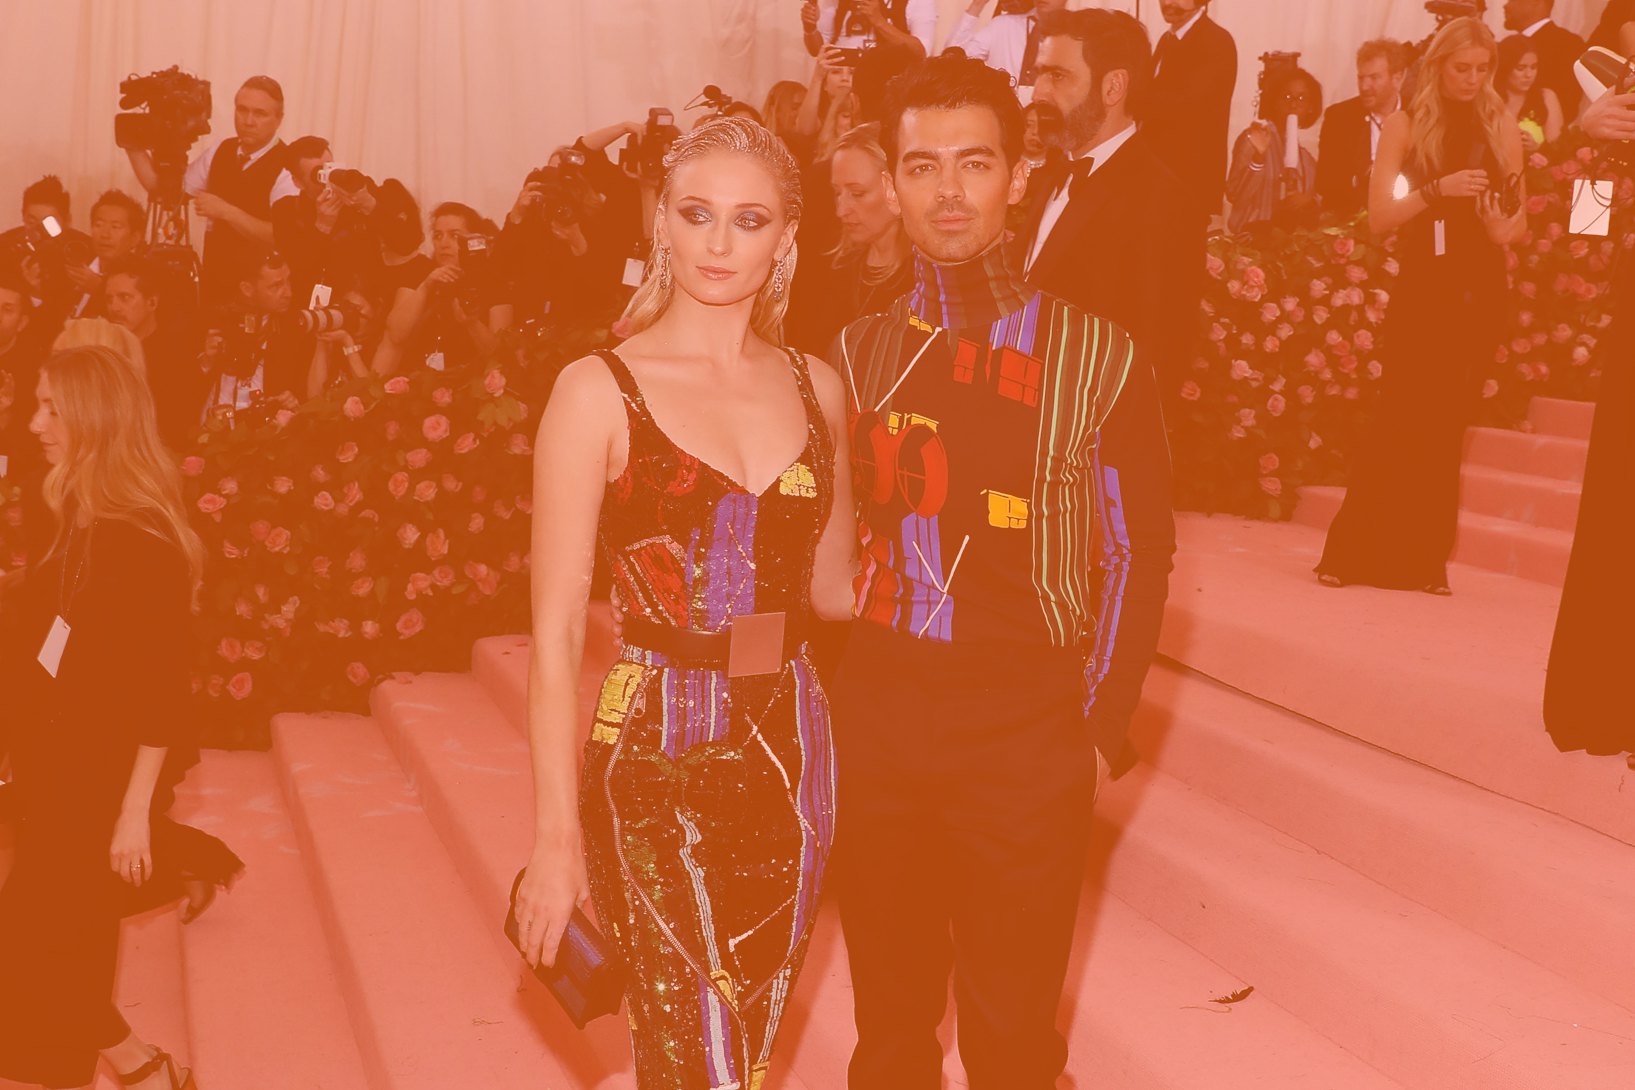 2022 Met Gala: Sophie Turner and Joe Jonas Coordinate Their Looks